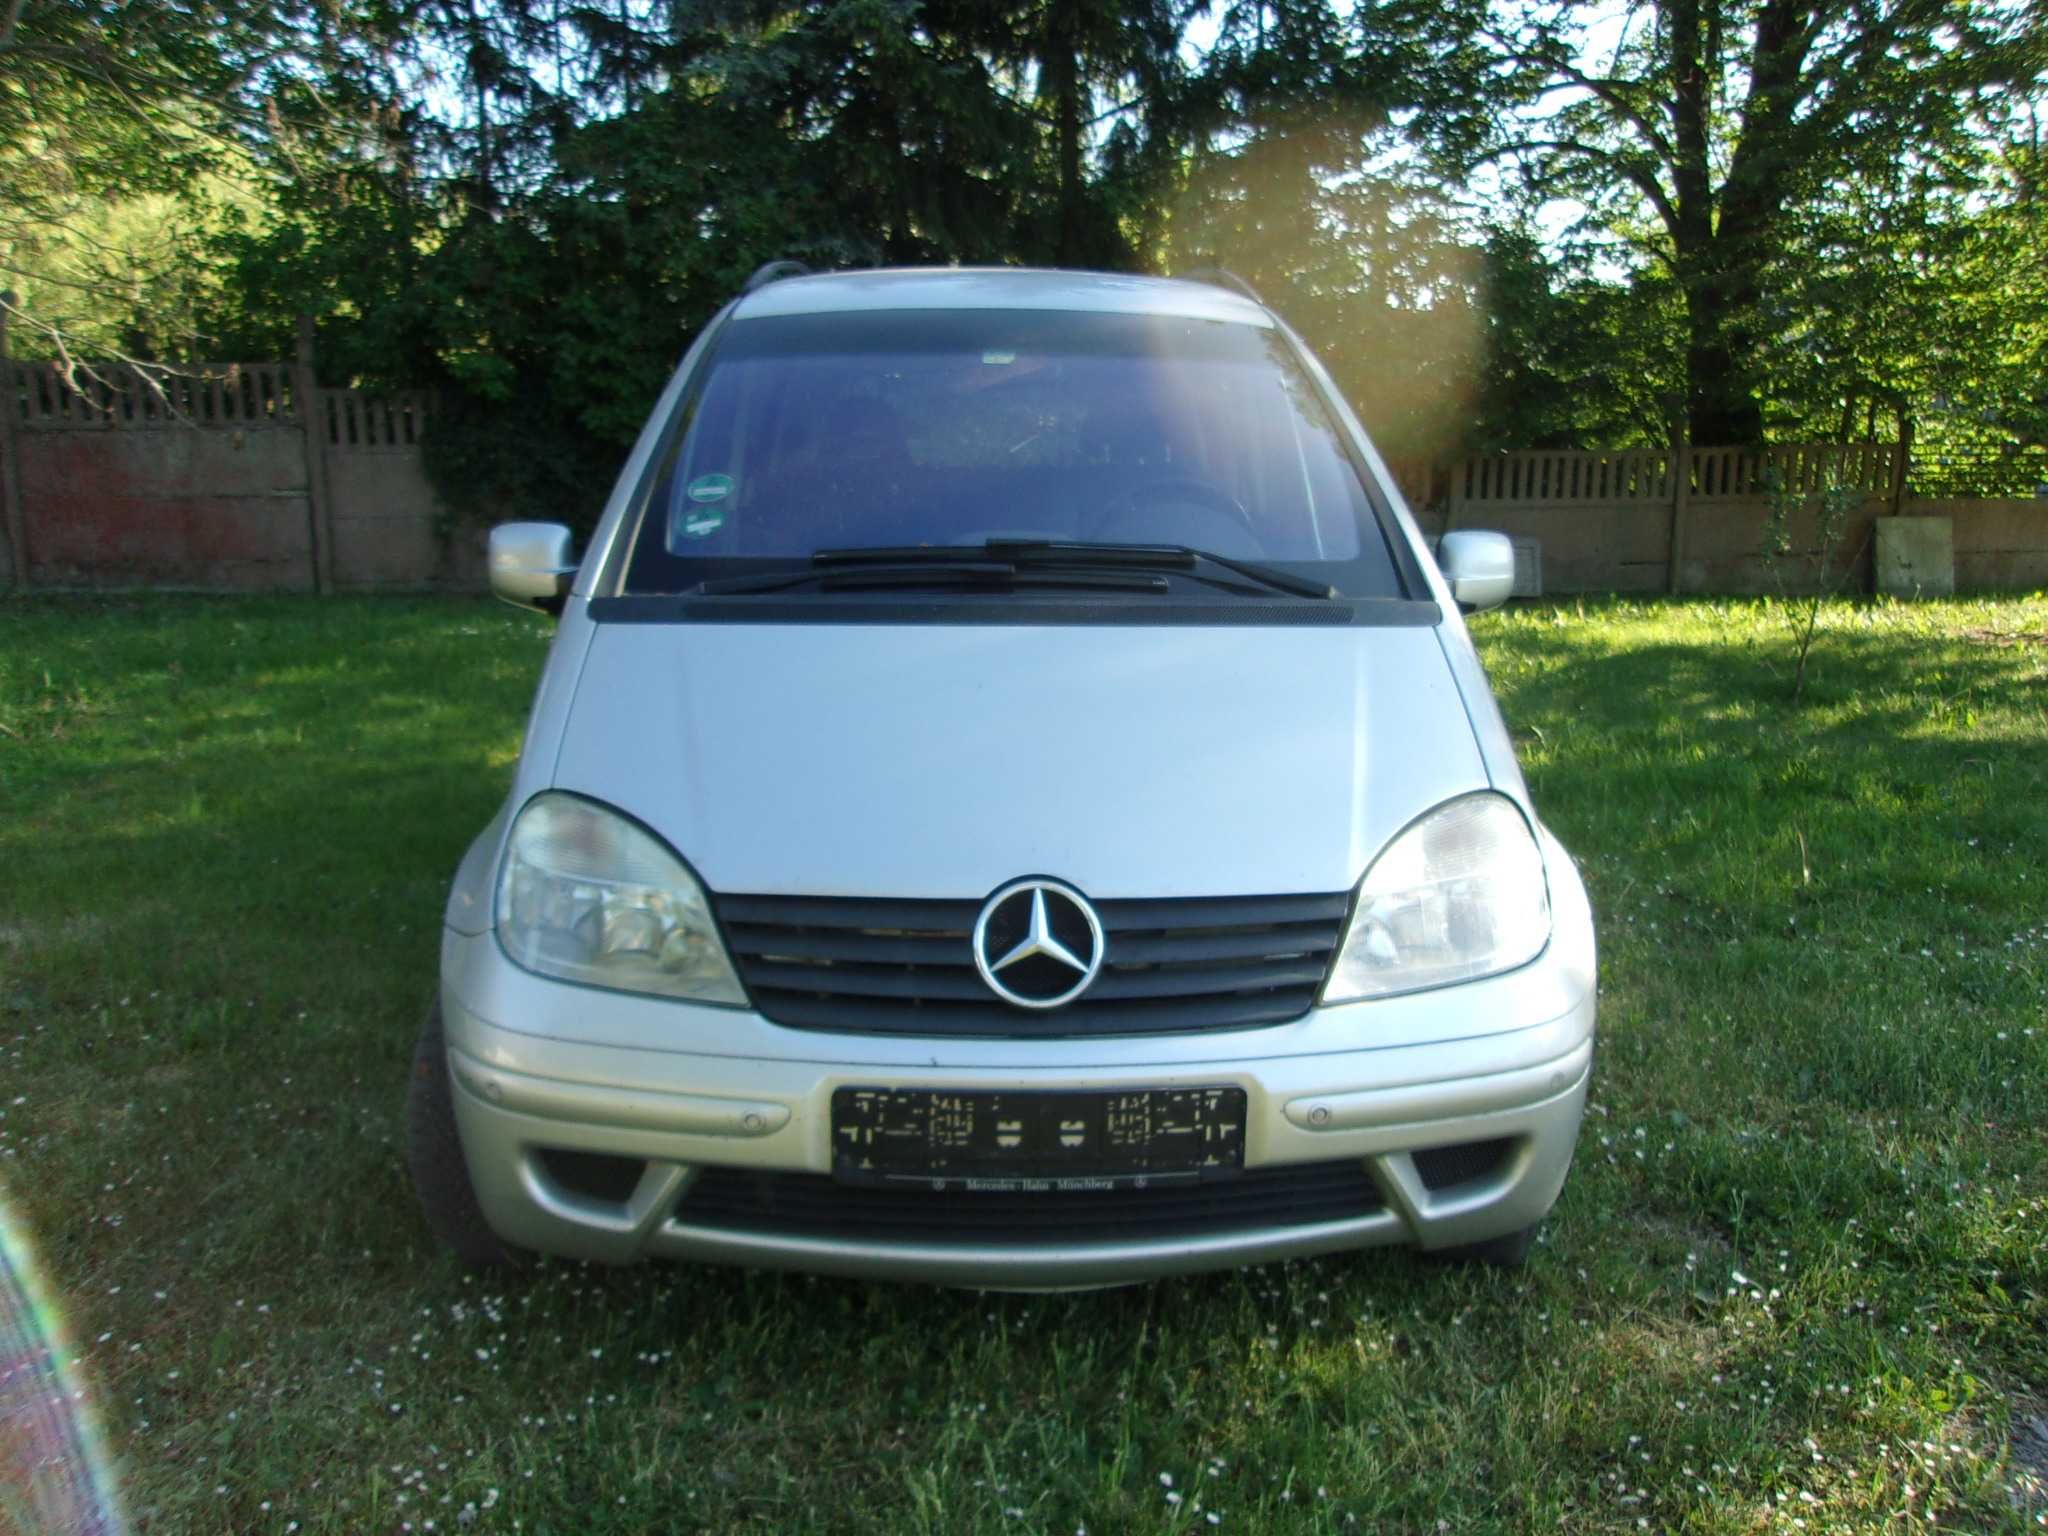 Mercedes VANEO 2004 Rok. 1.6 benzyna . Sprowadzony do opłat.